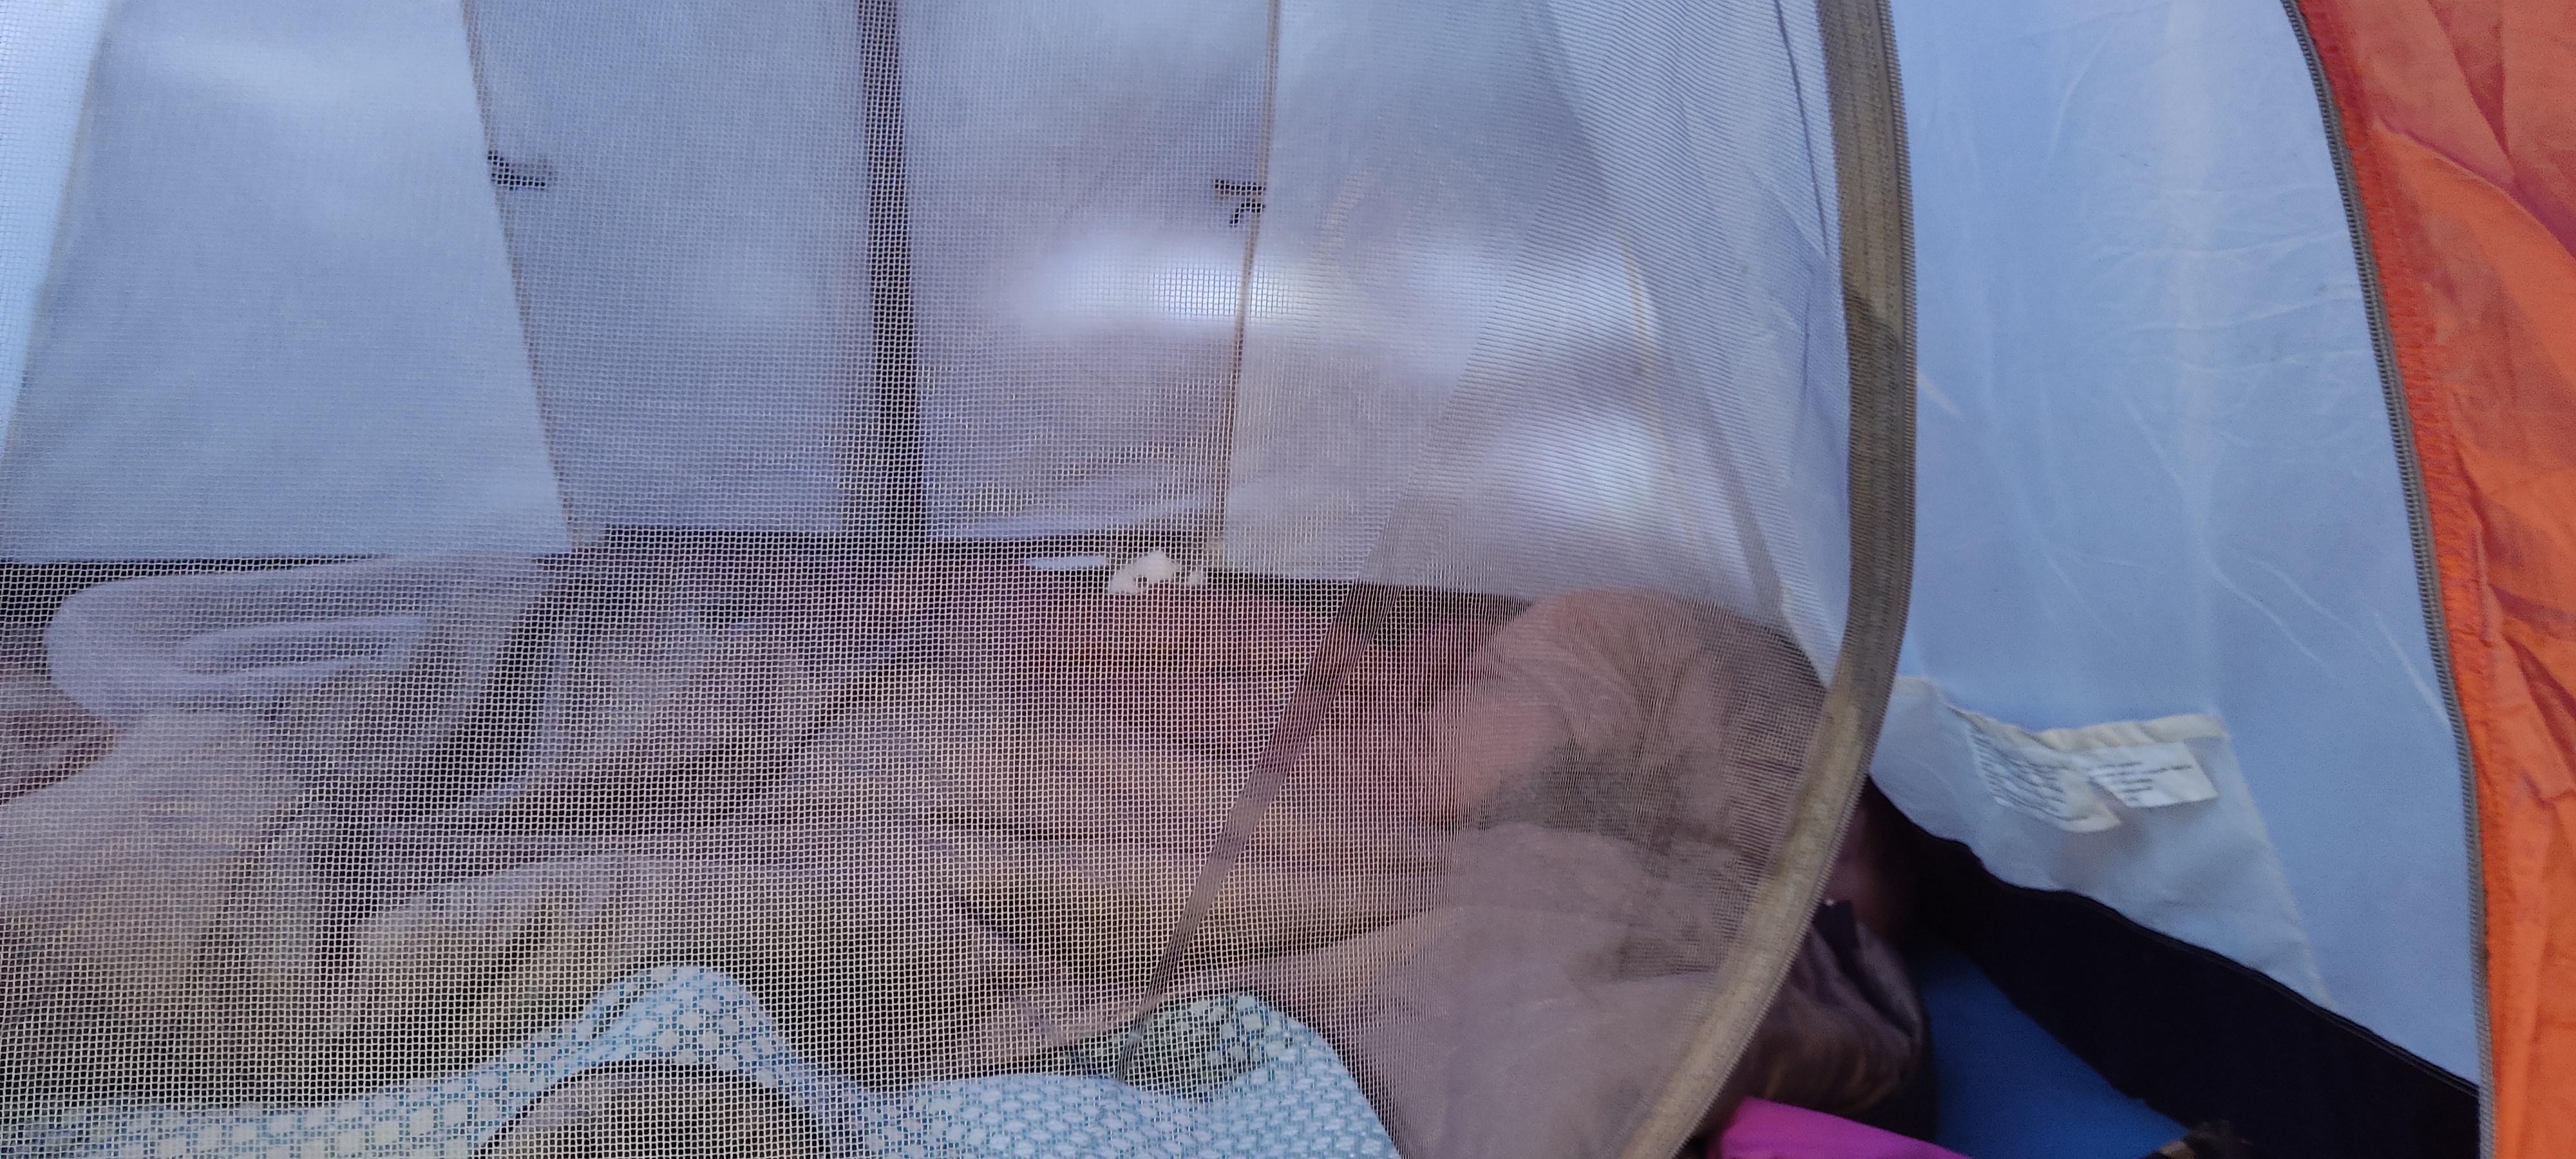 Котик испугался )) Палатка - лучшее убежище!